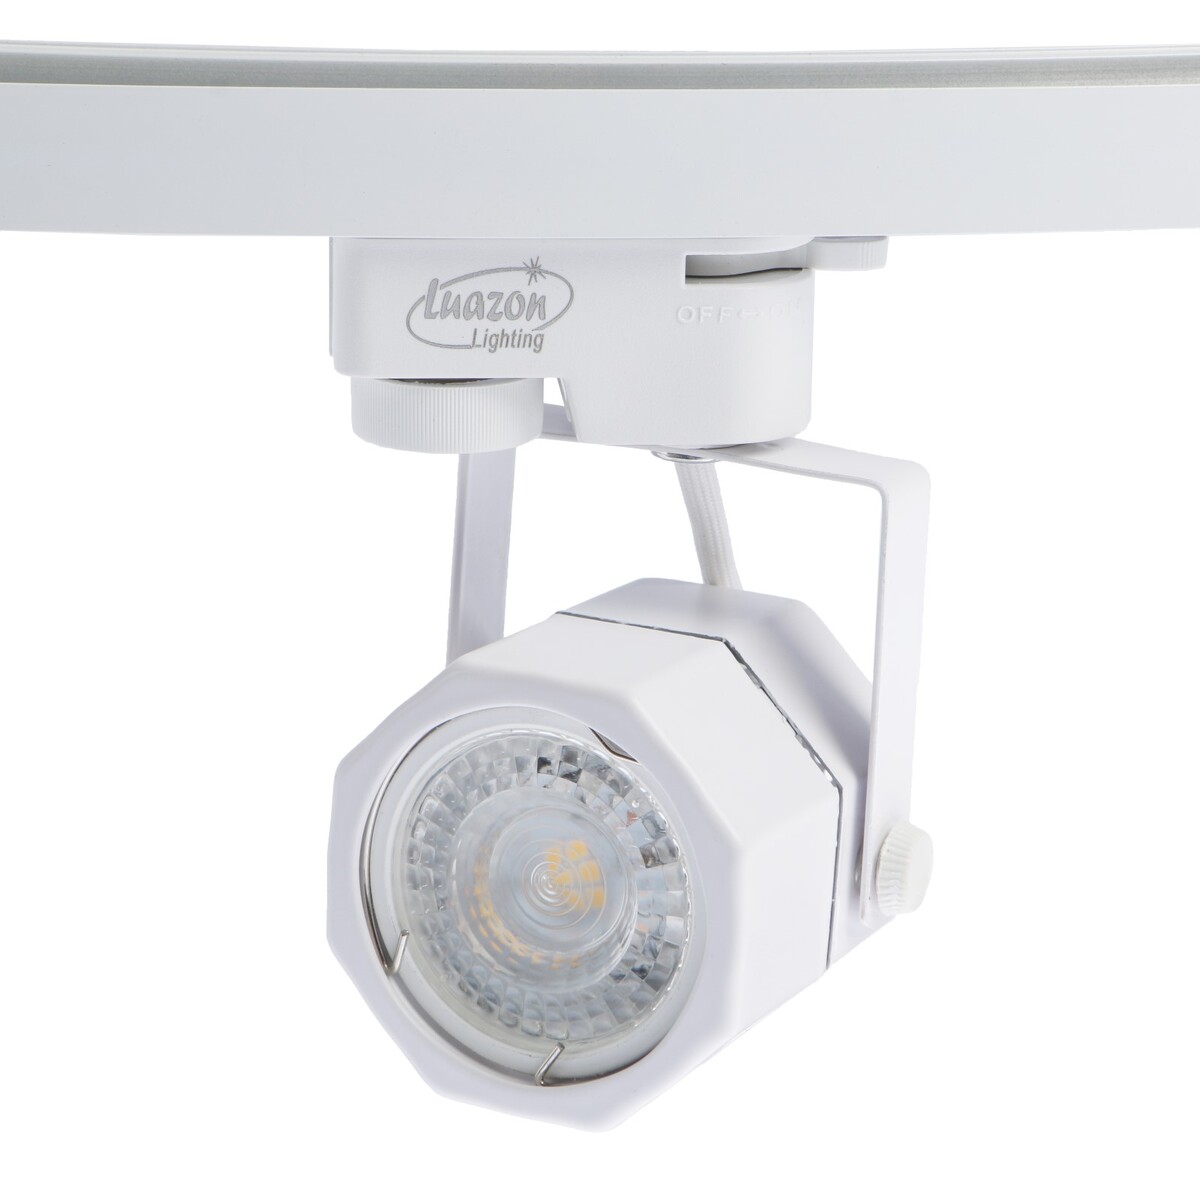 Трековый светильник luazon lighting под лампу gu10, восемь граней, корпус белый светильник для туалета с датчиком движ rgb 3 вт ip68 от бат 3 aaa белый